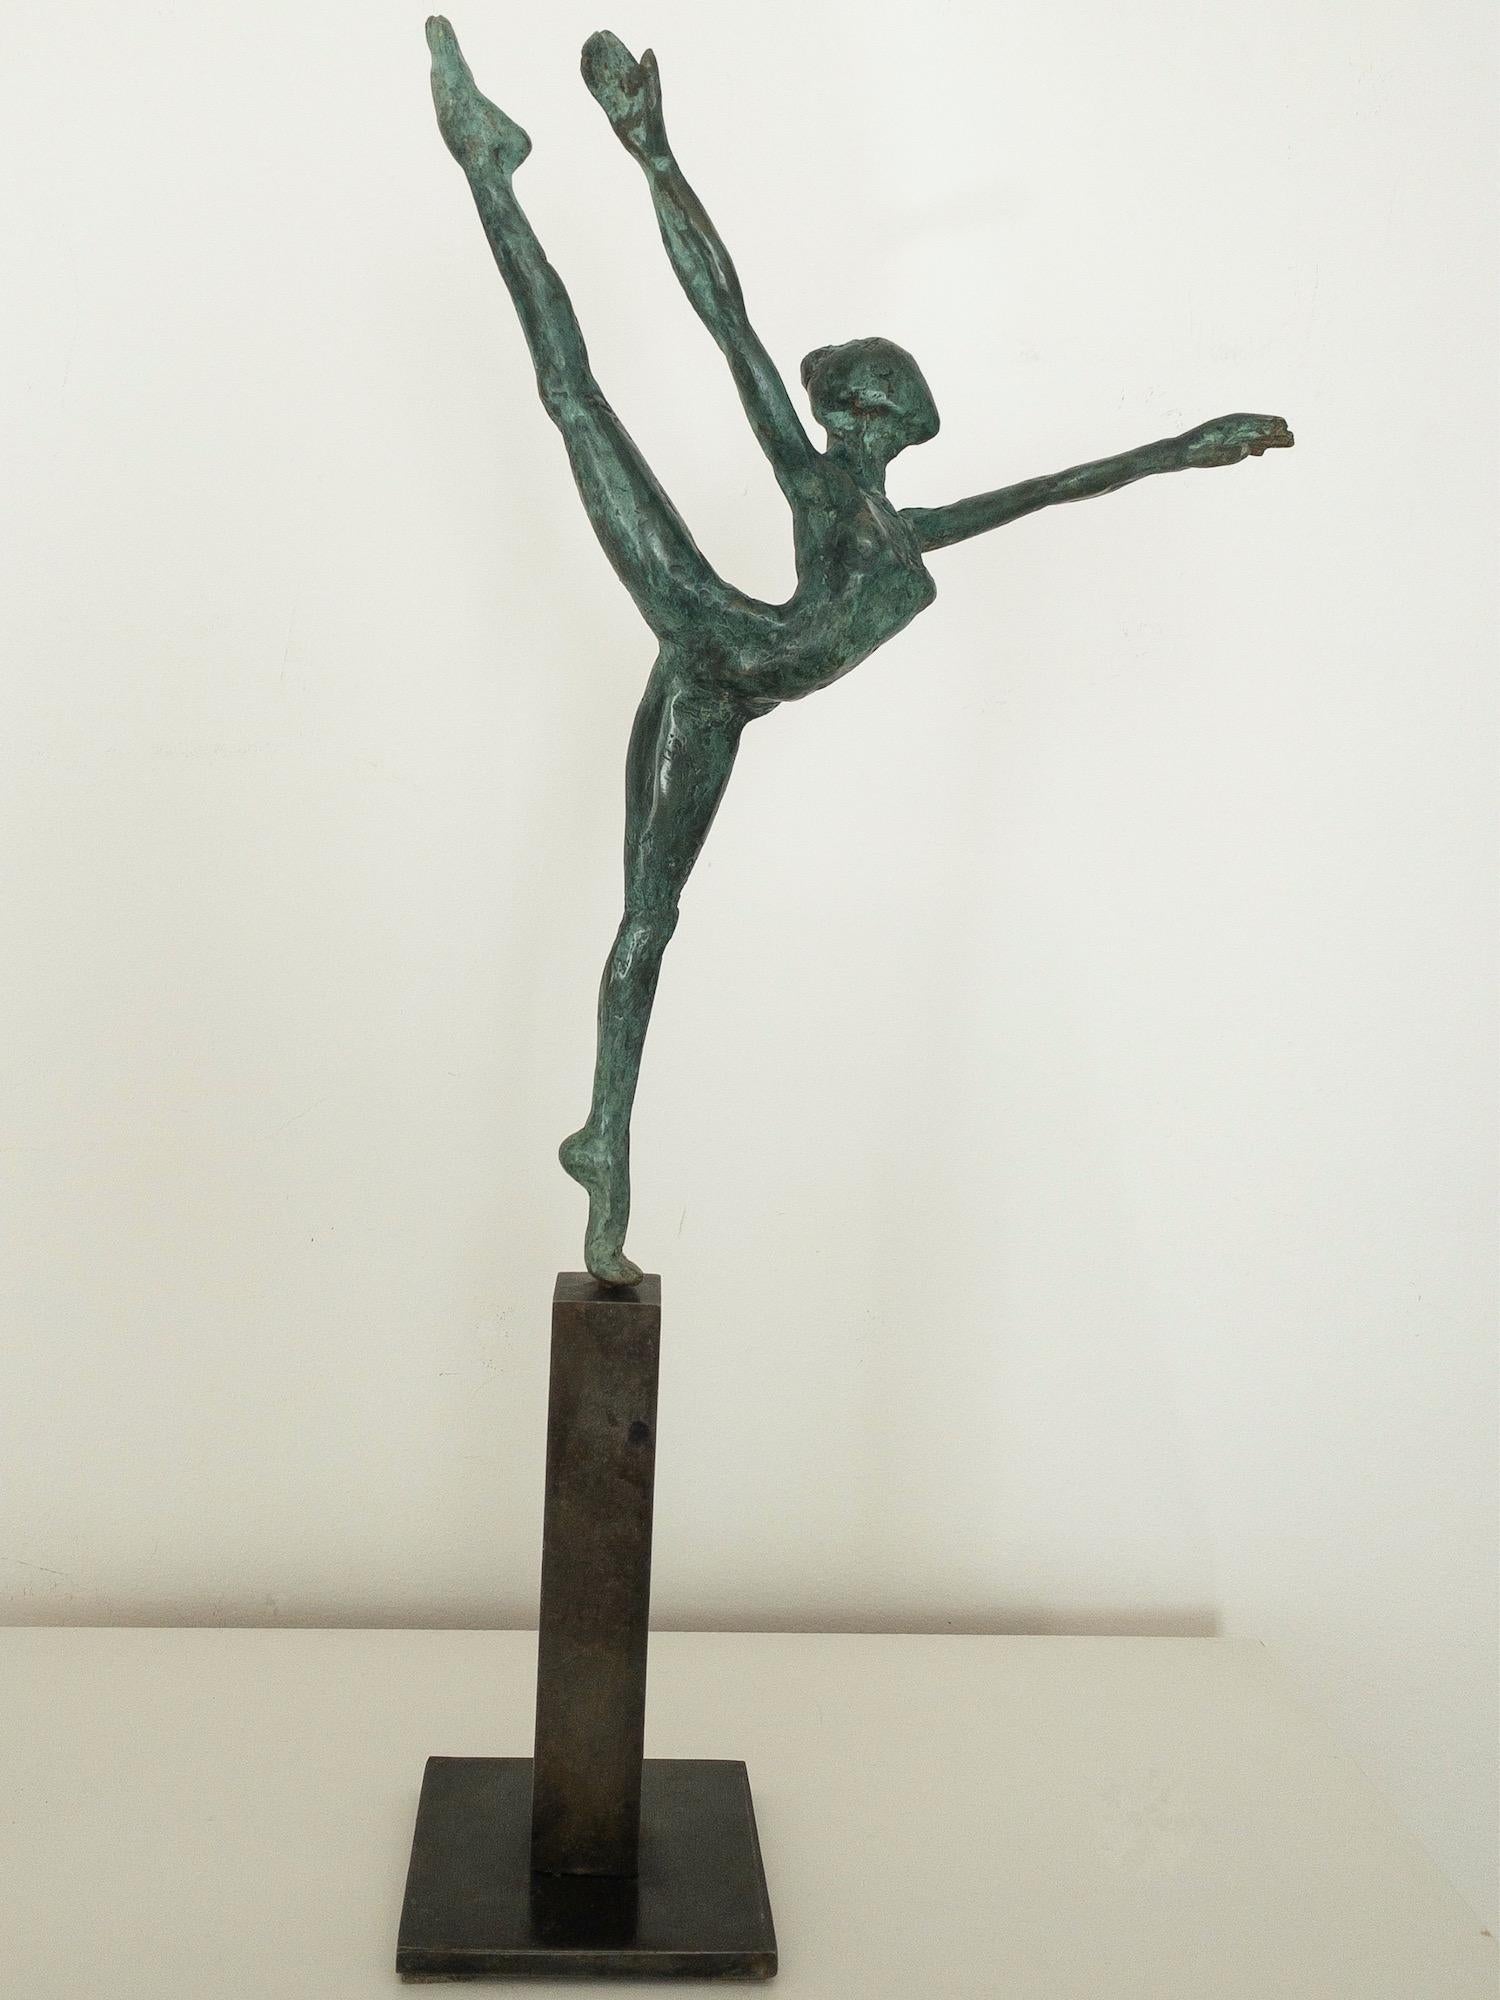 Danseuse "Elancée" II est une sculpture en bronze de l'artiste contemporain Yann Guillon, dont les dimensions sont 28 cm × 21 cm × 4 cm (11 × 8.3 × 1.6 in). Dimensions de la base métallique : 13 cm x 8 cm x 8 cm (5.1 x 3.1 x 3.1 in). Hauteur de la